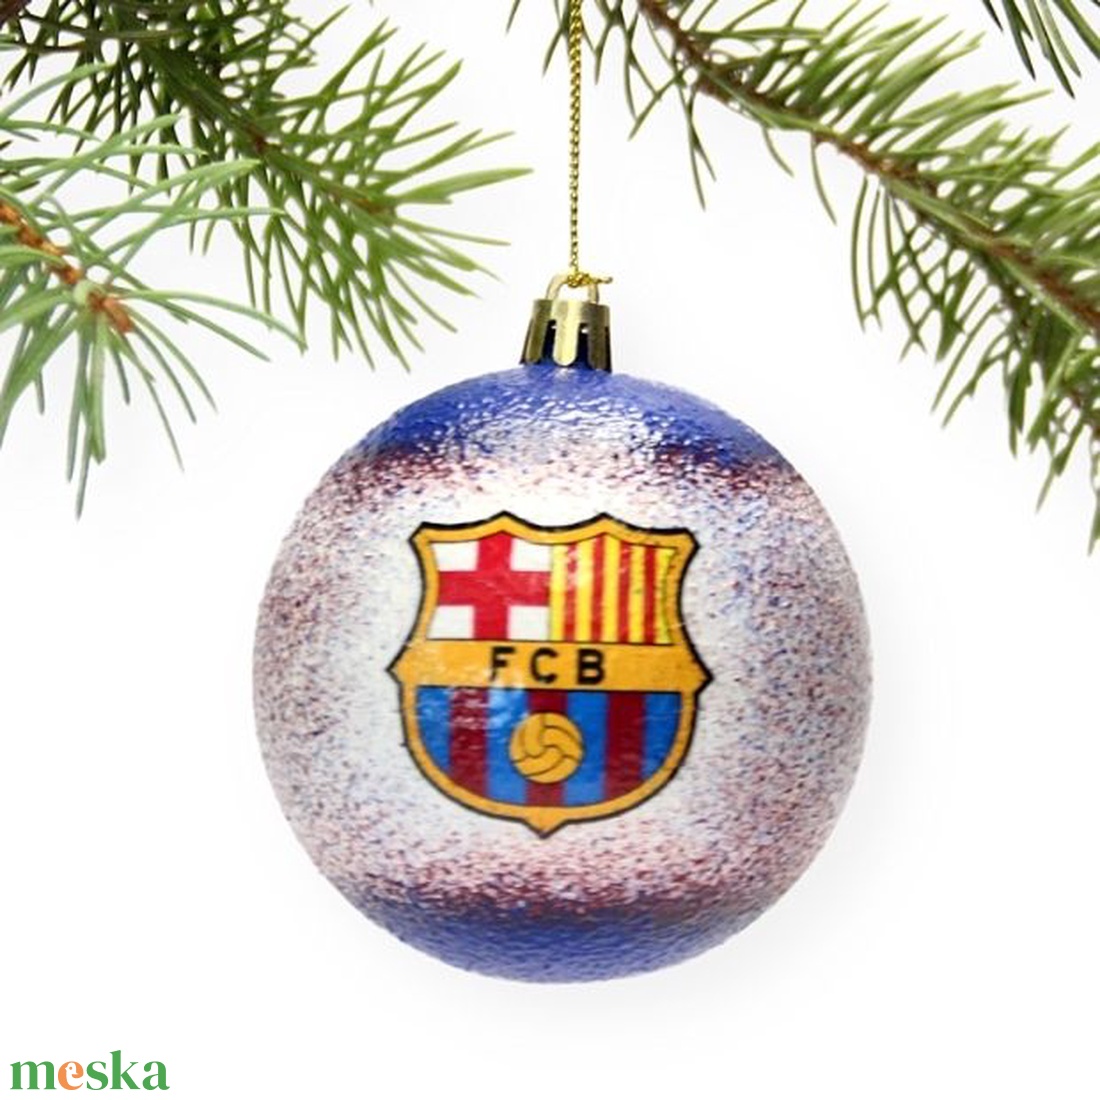 Karácsonyfa gömb foci témájú emblémával -FC BARCELONA szurkolóknak  -  párodnak; szerelmednek  mikulásra és karácsonyra  - karácsony - karácsonyi lakásdekoráció - karácsonyfadíszek - Meska.hu